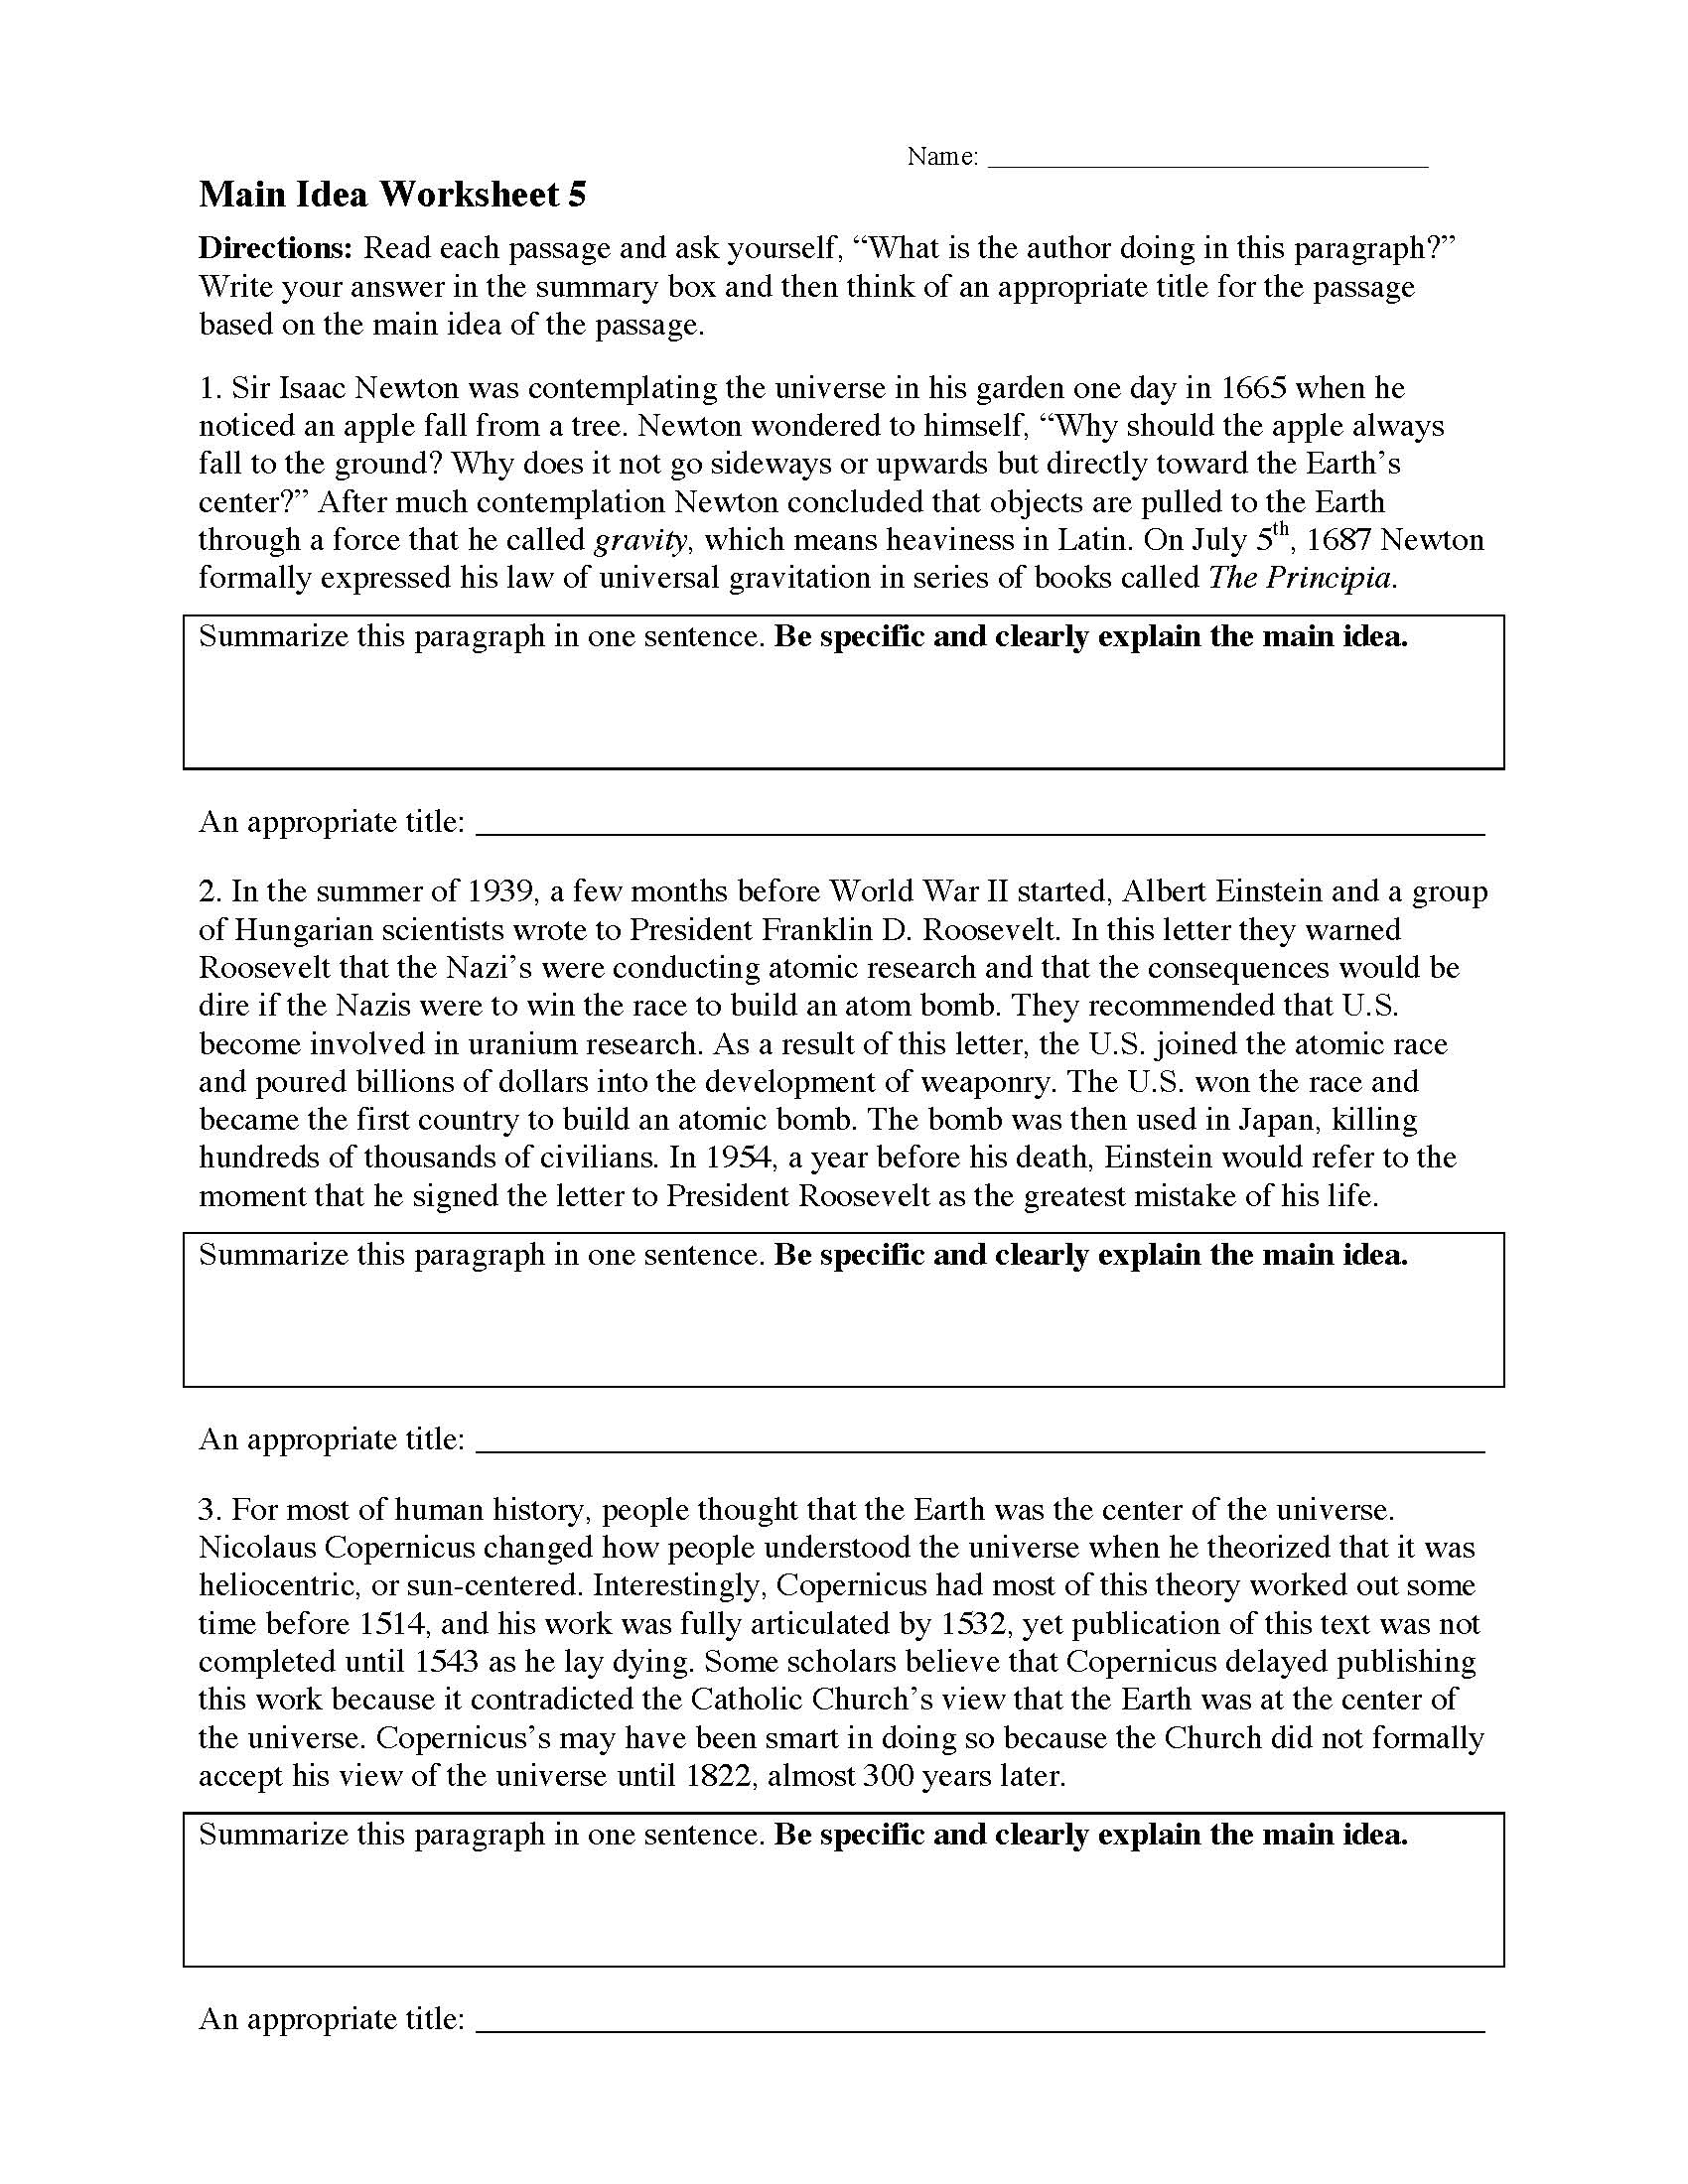 Main Idea Worksheet 25  Reading Activity For Main Idea Worksheet 5